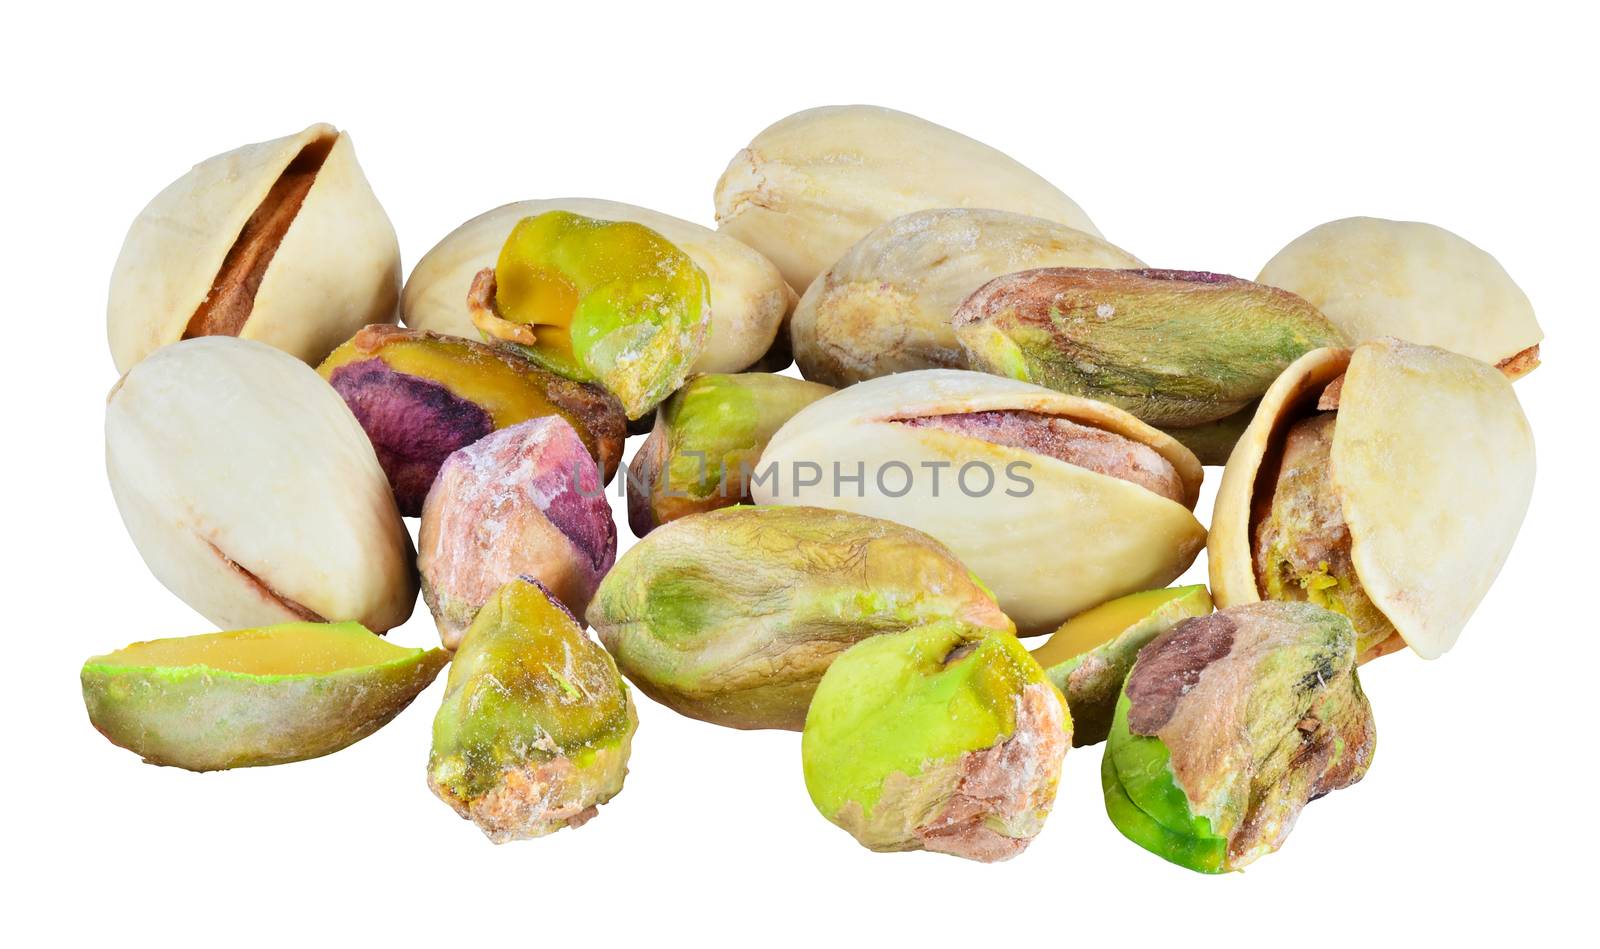 Pistachio nuts by Vectorex